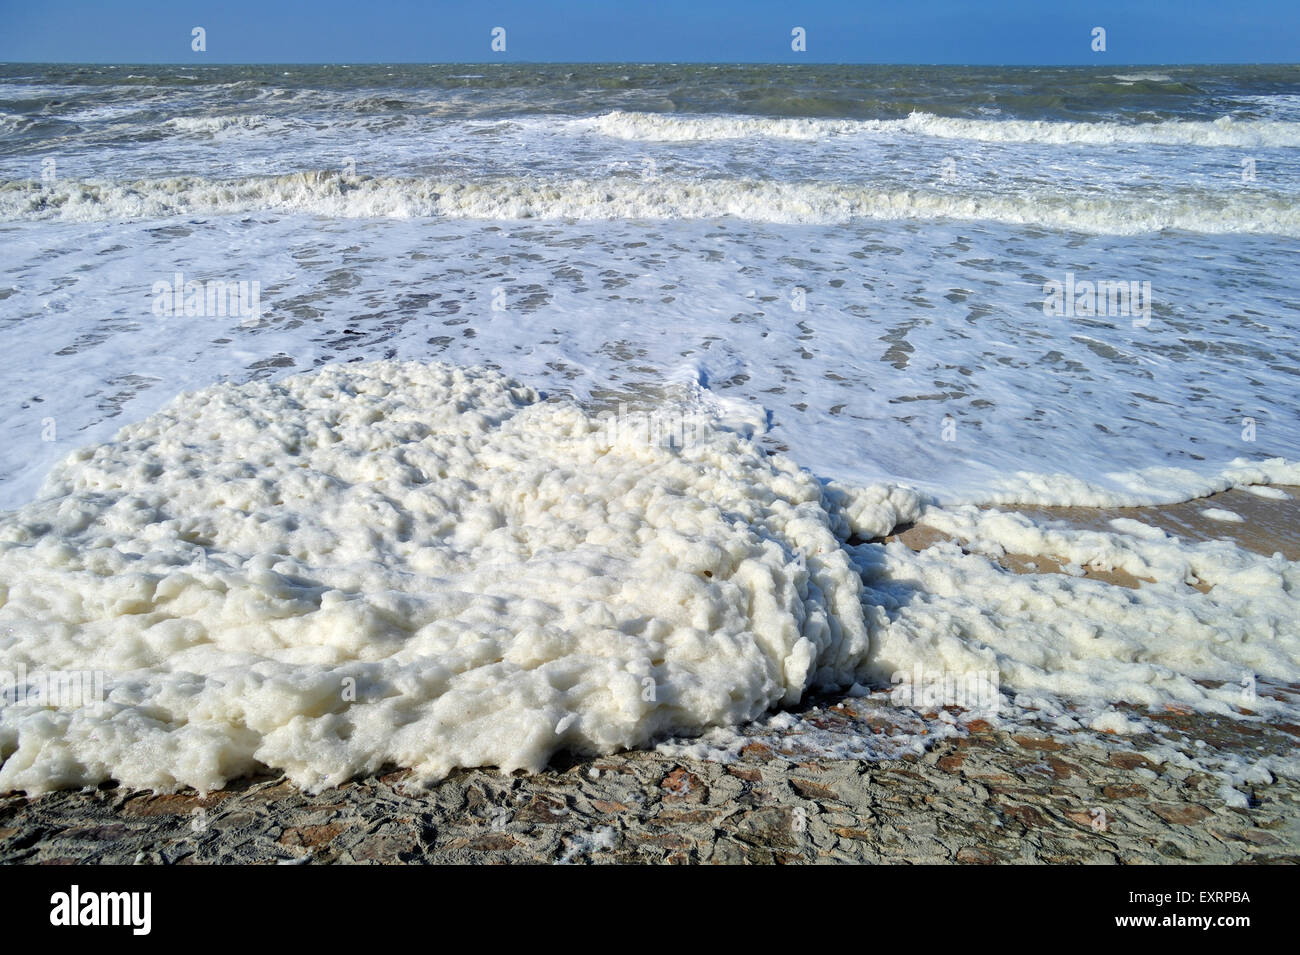 Spume / di schiuma di mare oceano / schiuma / spiaggia schiuma formata durante la burrascosa condizioni e a seguito di una fioritura algale (Phaeocystis) Foto Stock